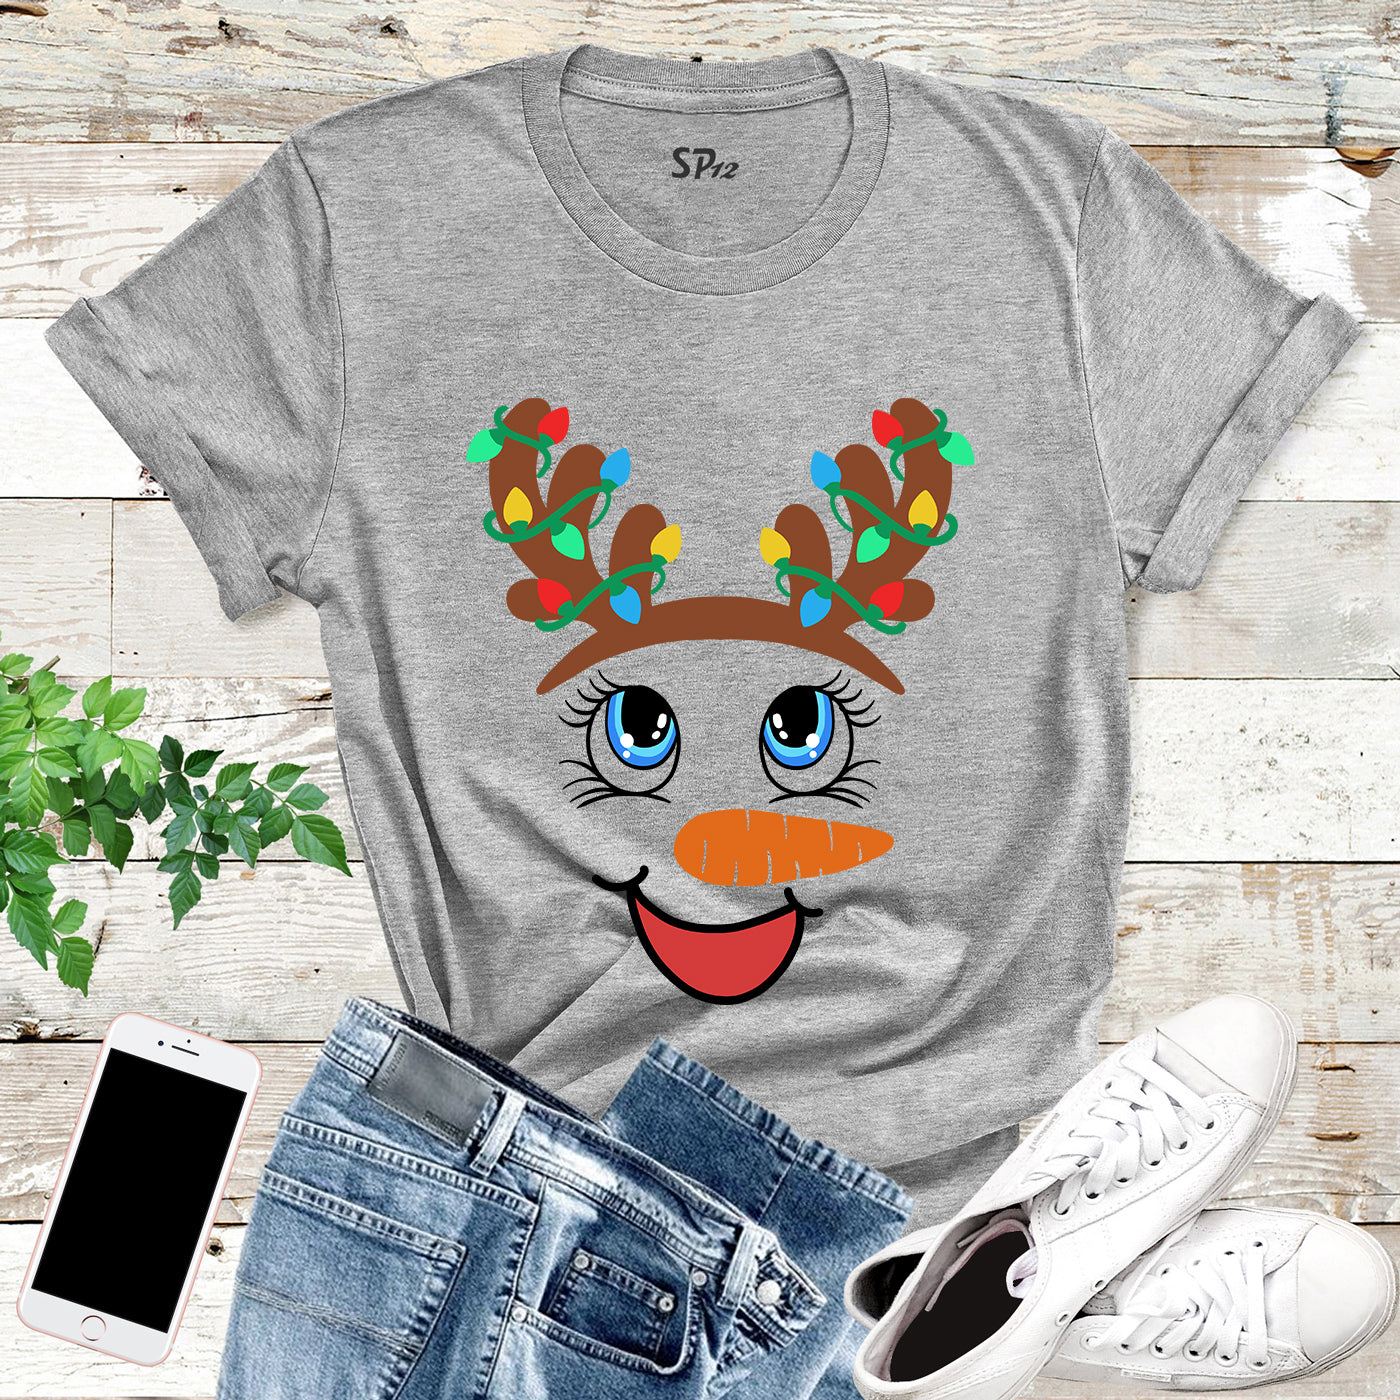 Snowman Face Christmas Light T-Shirt